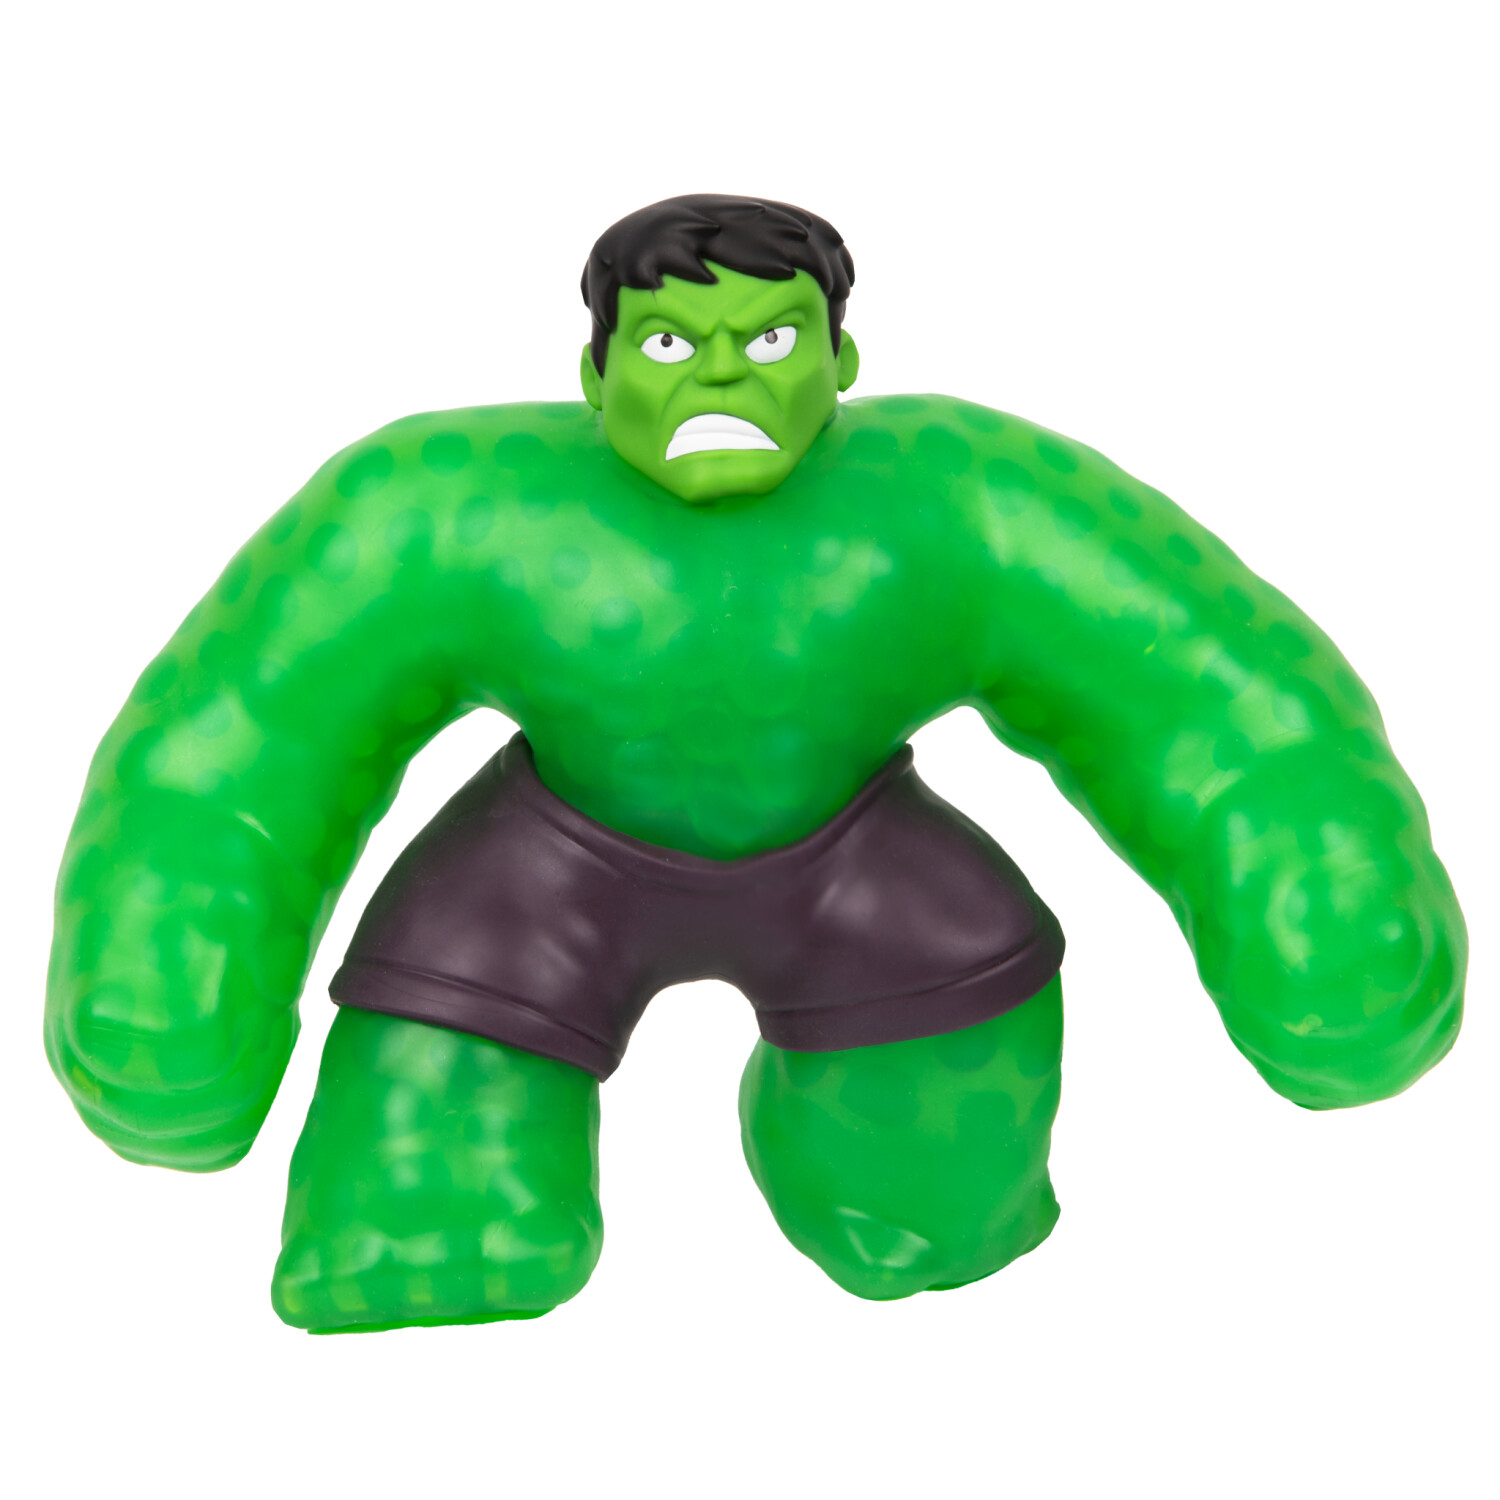 Moose Toys Heroes of Goo Jit Zu - Hulk (41106) au meilleur prix sur